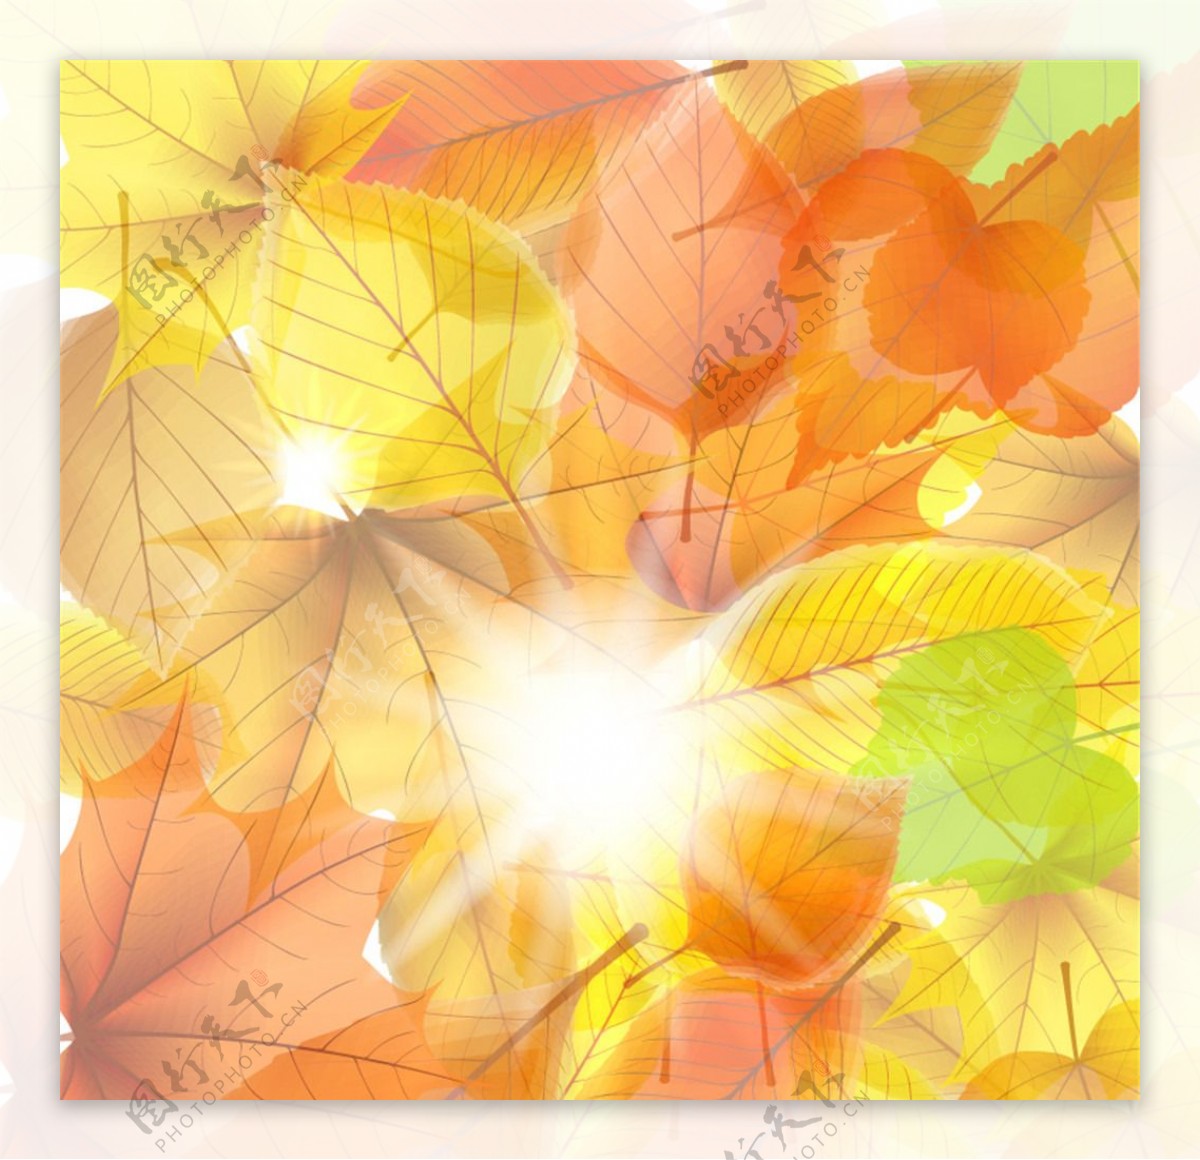 明媚阳光与秋叶背景矢量素材